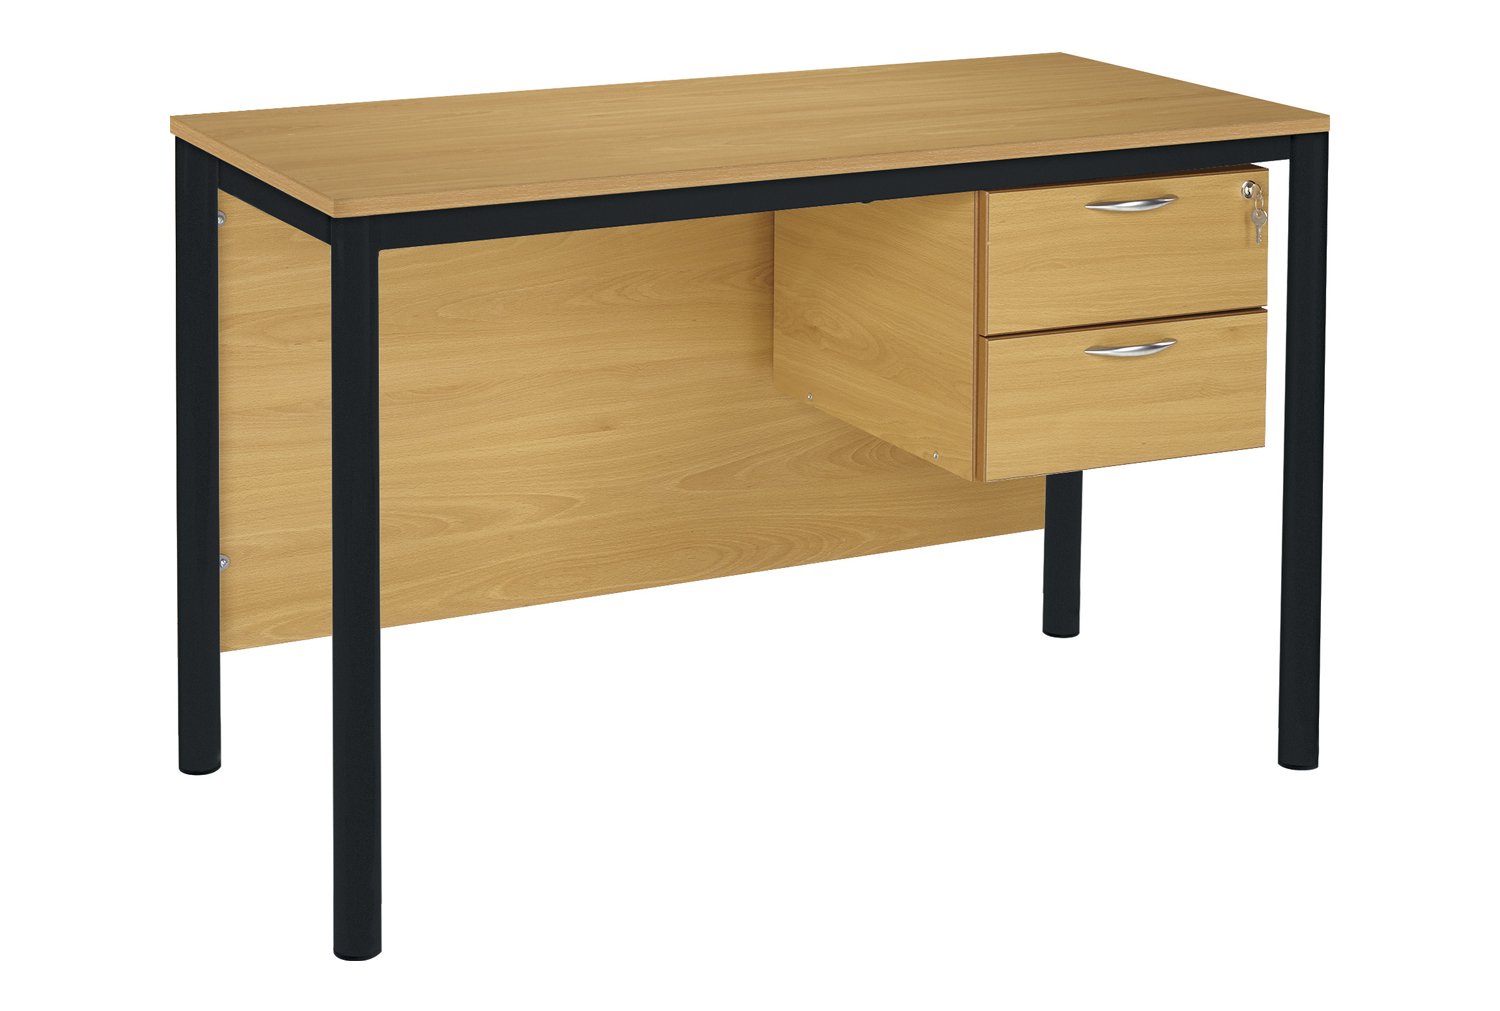 RT45 Teachers Desk With 2 Drawers 120x60cm, 120wx60dx76h (cm), Black Frame, Beech Top, ABS Beech Edge